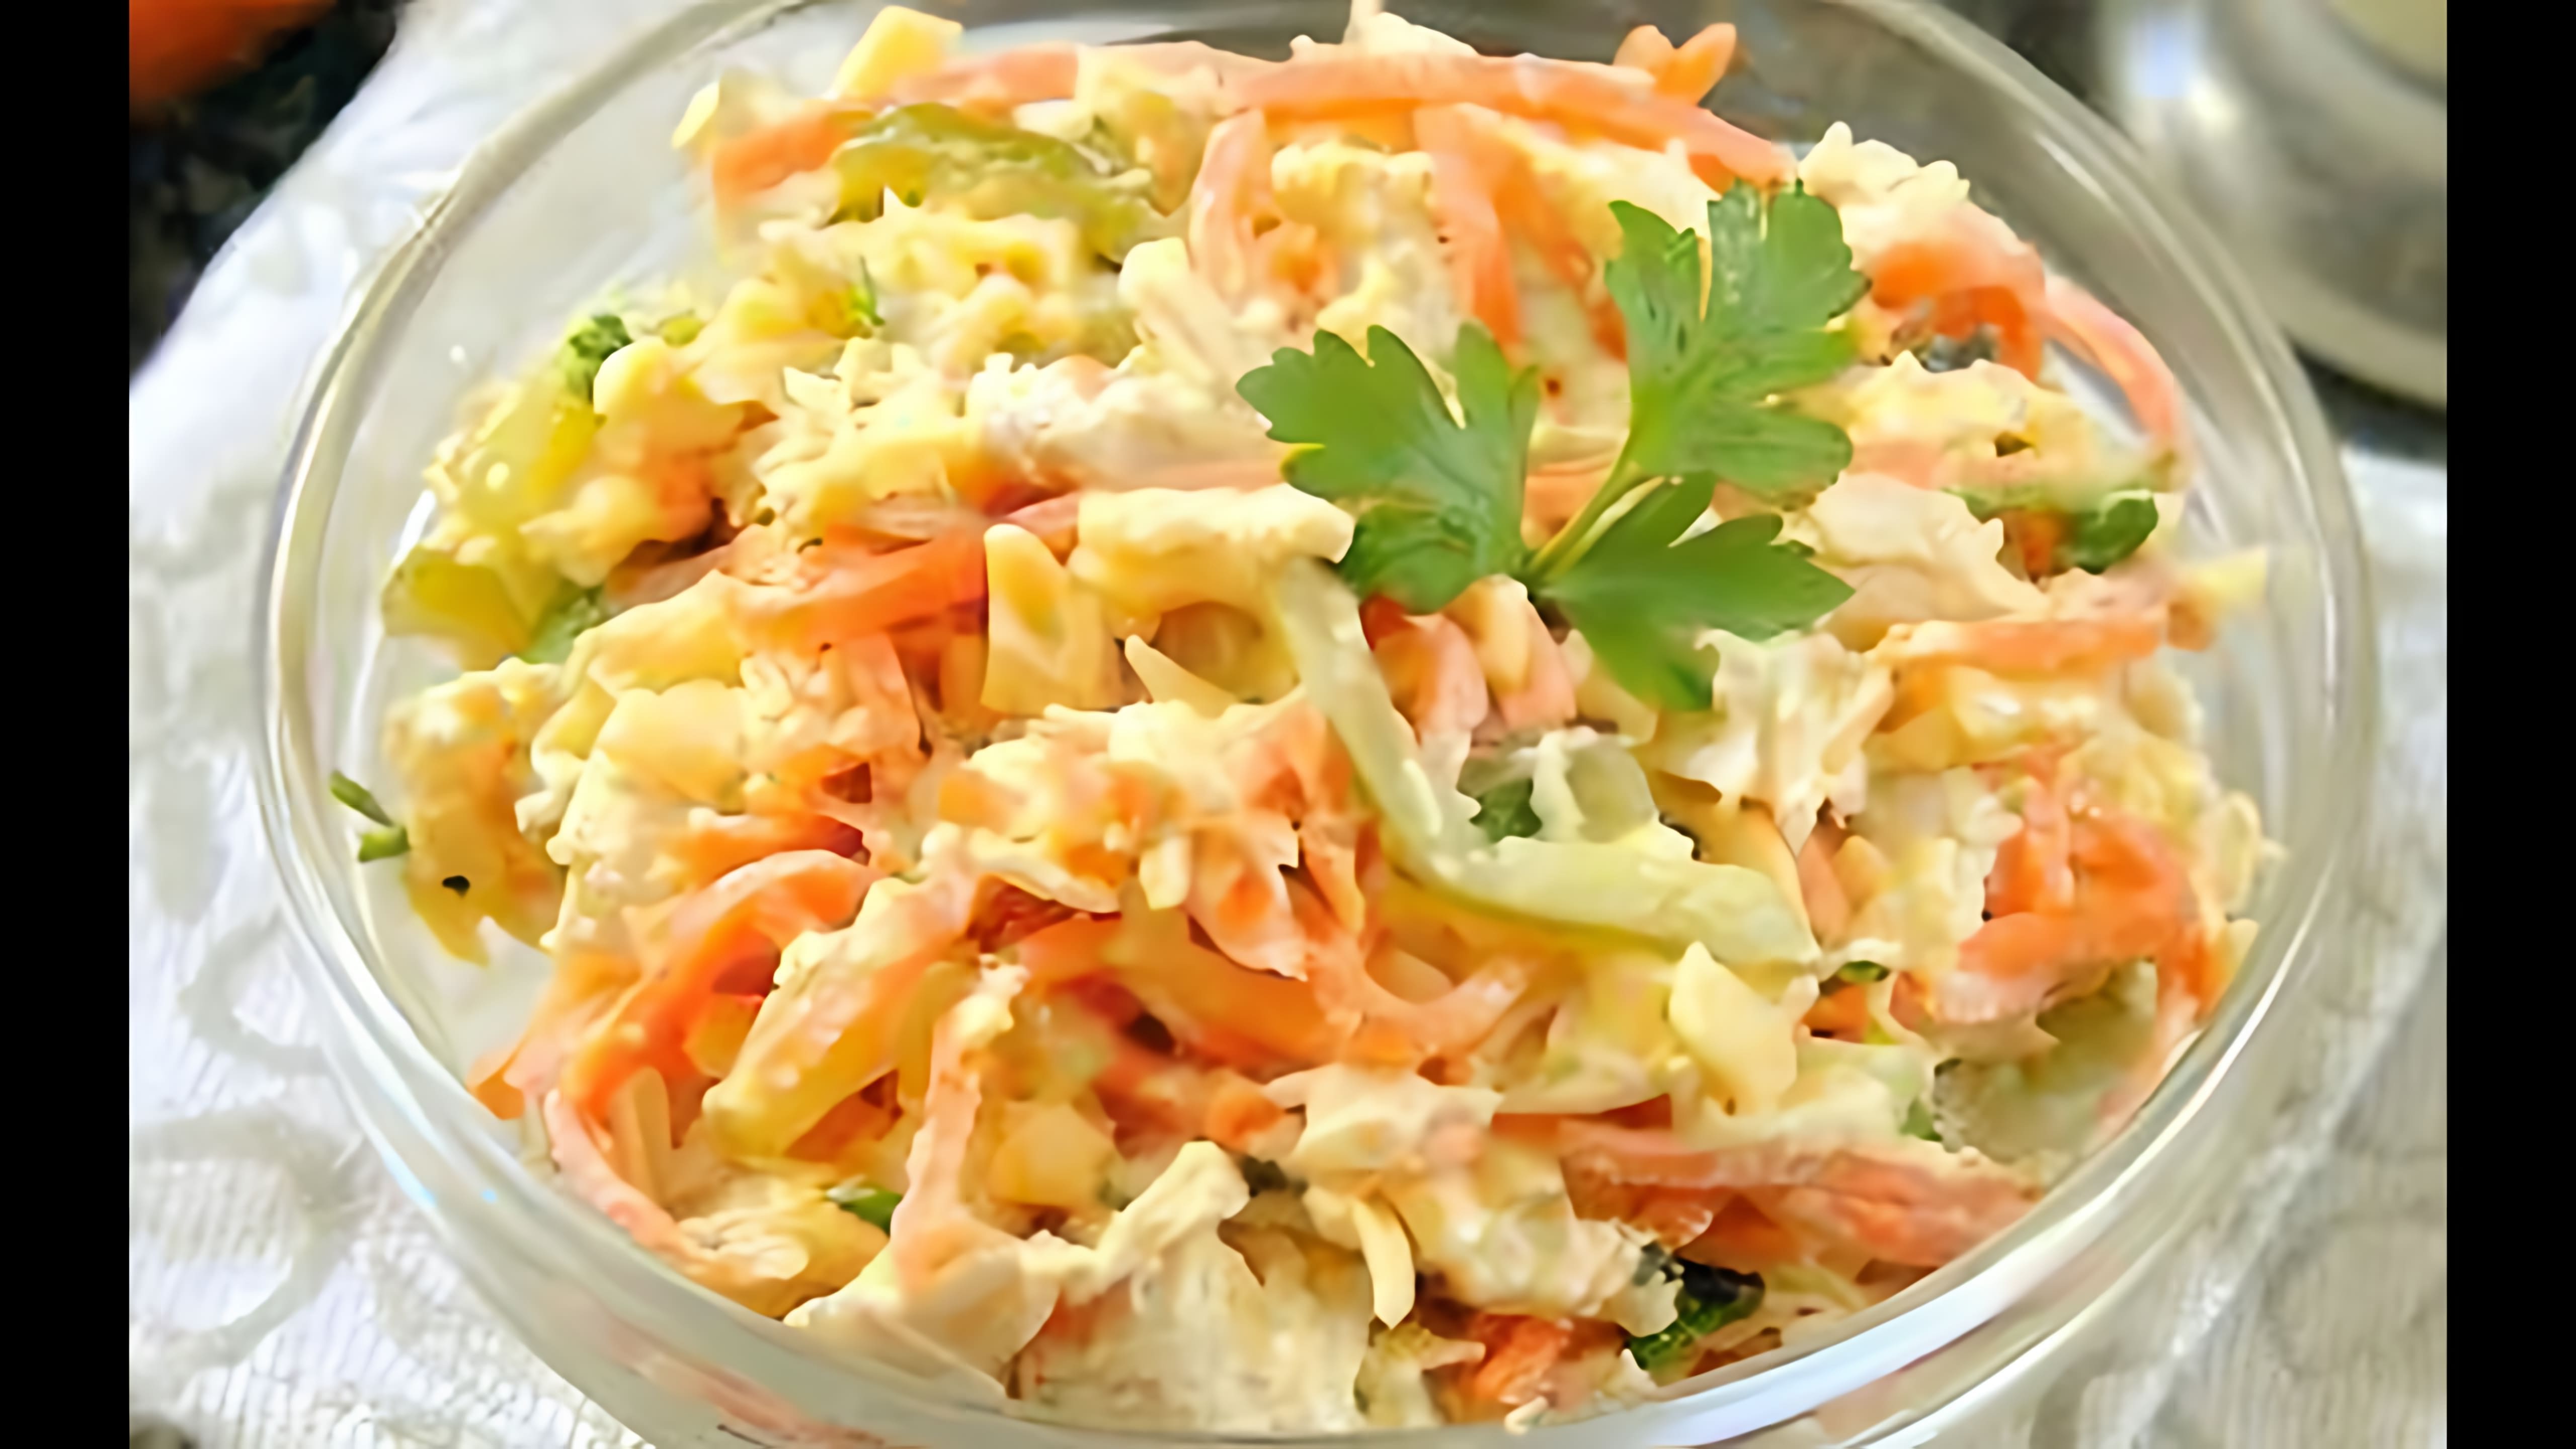 Салат "Лисичка" с корейской морковкой - это вкусное и оригинальное блюдо, которое можно приготовить в домашних условиях